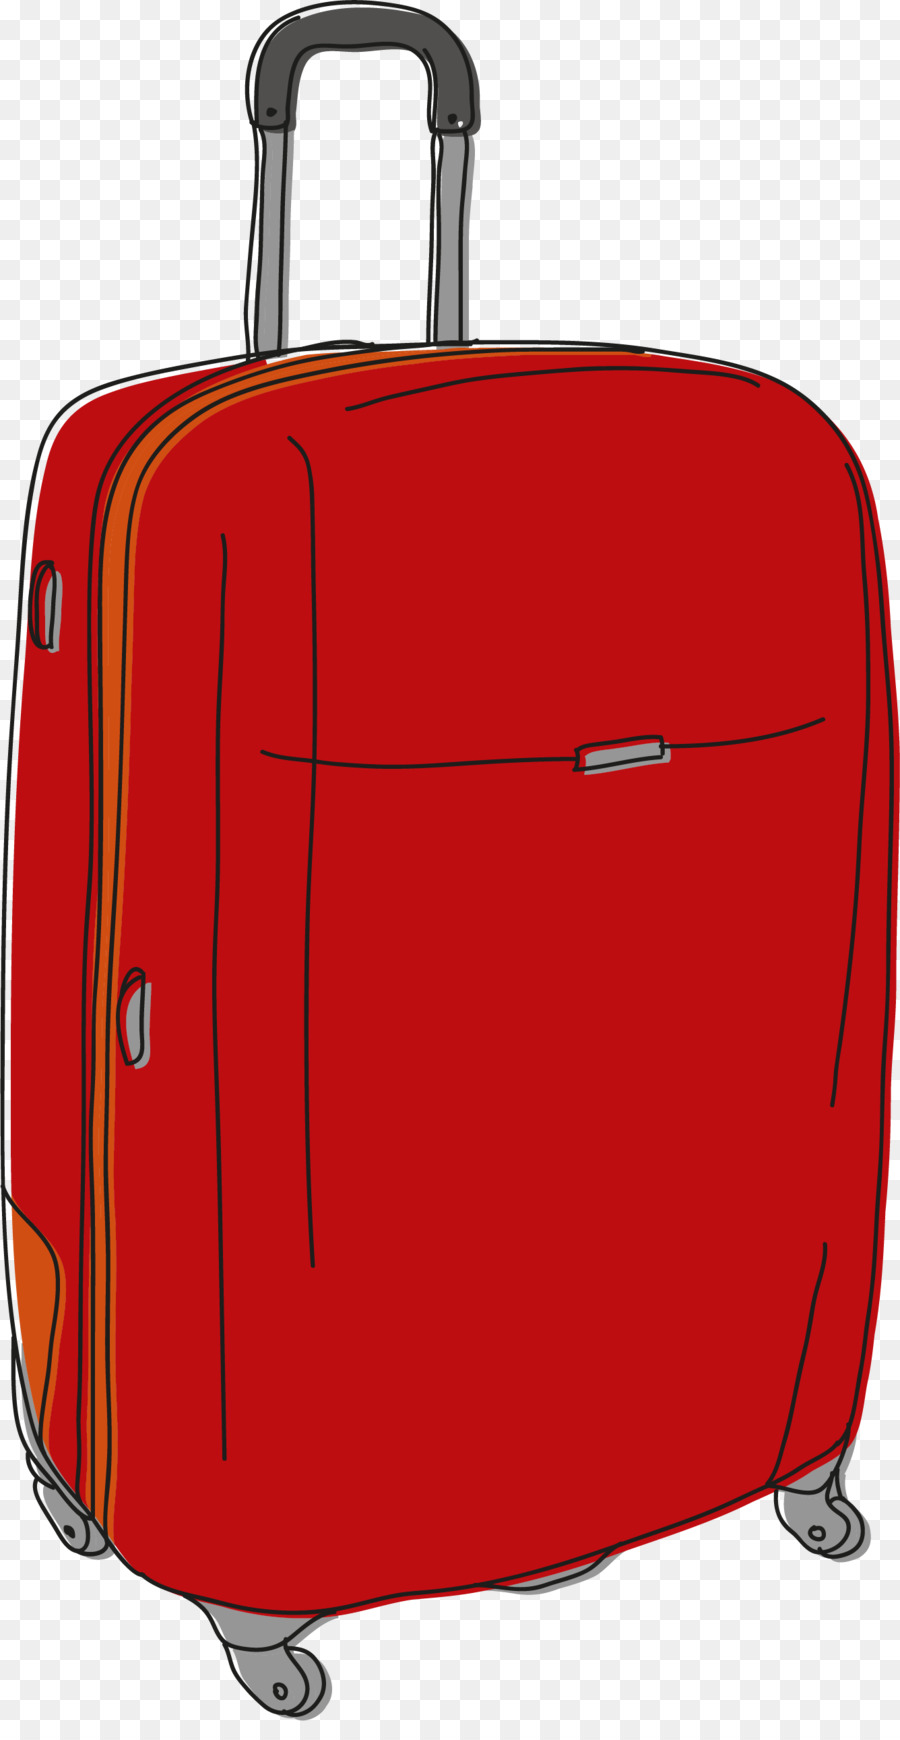 Bagaglio a mano Valigia Bagaglio di Disegno - Dipinti a mano rosso valigia